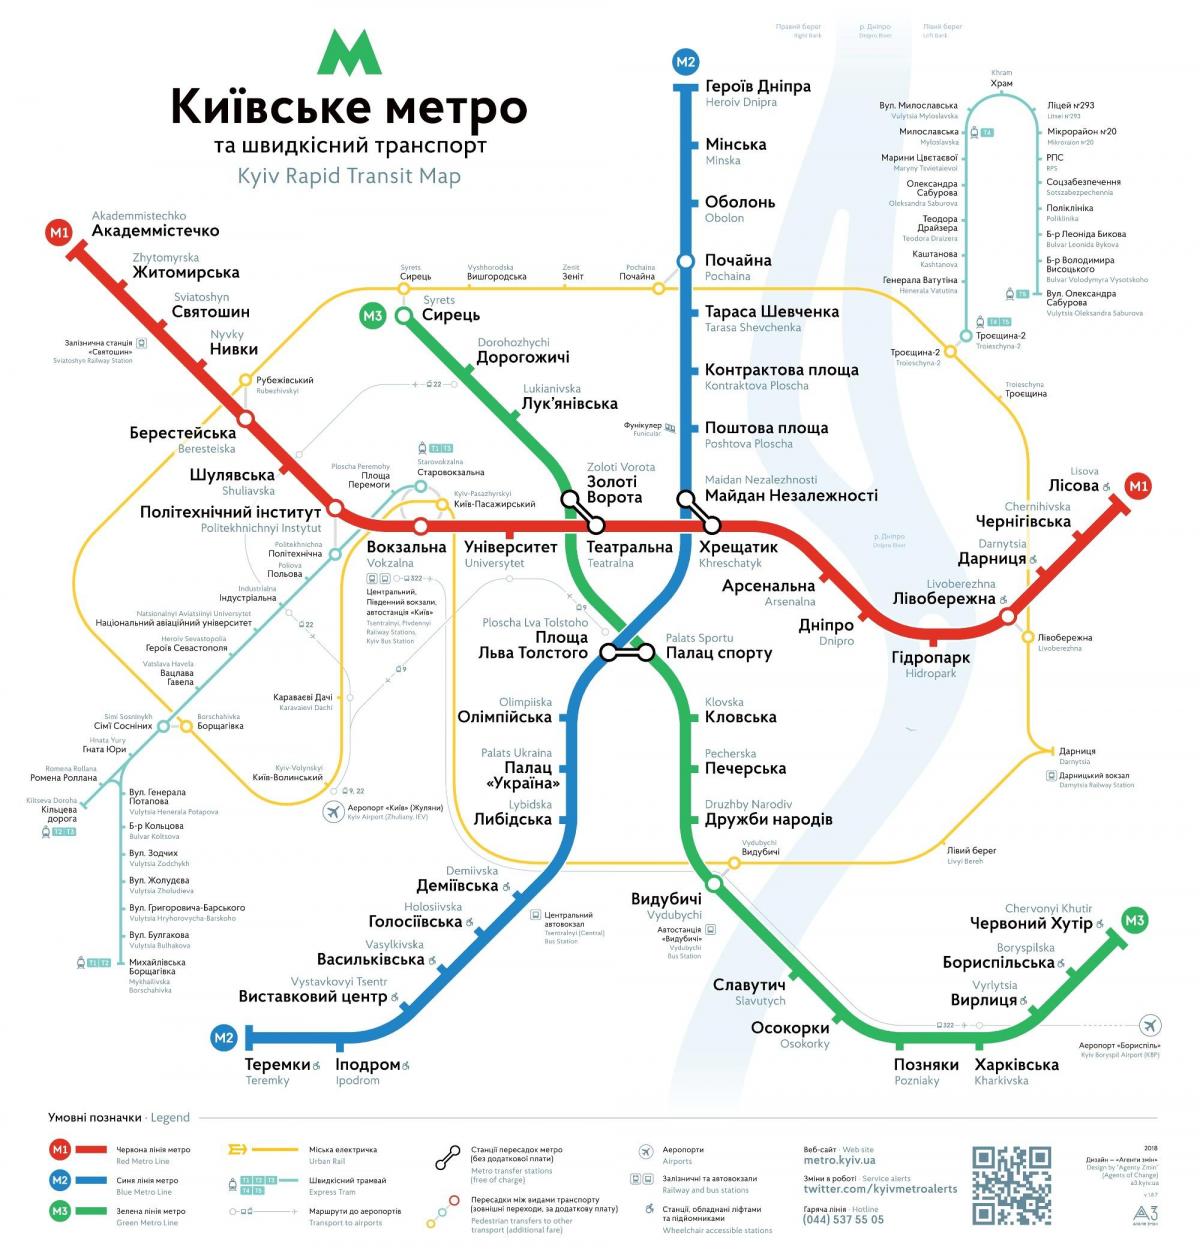 キエフの地下鉄駅マップ